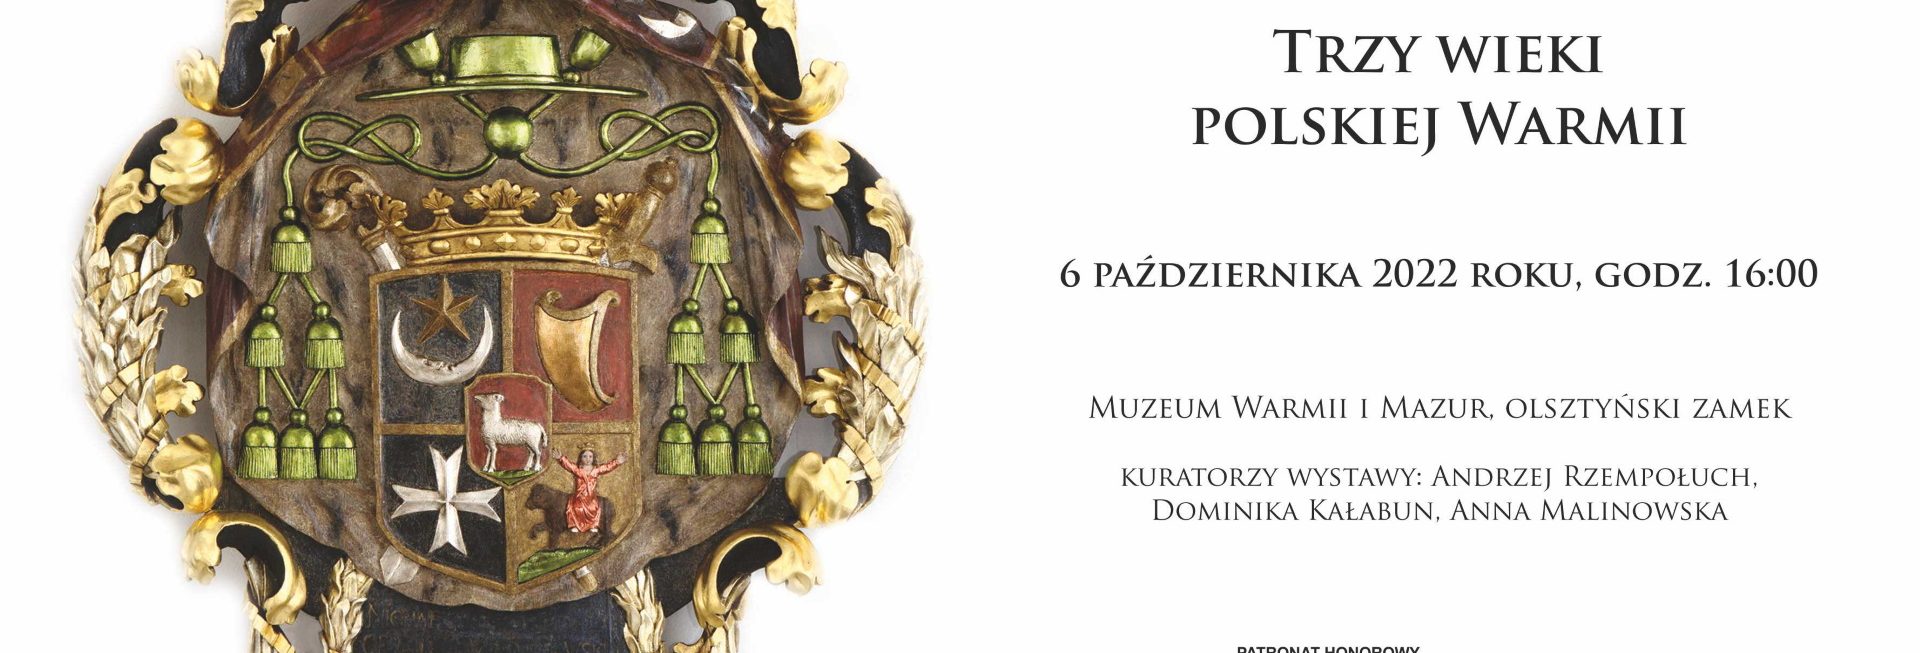 Plakat zapraszający do Olsztyna na Wernisaż "Trzy wielki polskiej Warmii" w Muzeum Warmii i Mazur Olsztyński Zamek 2022.